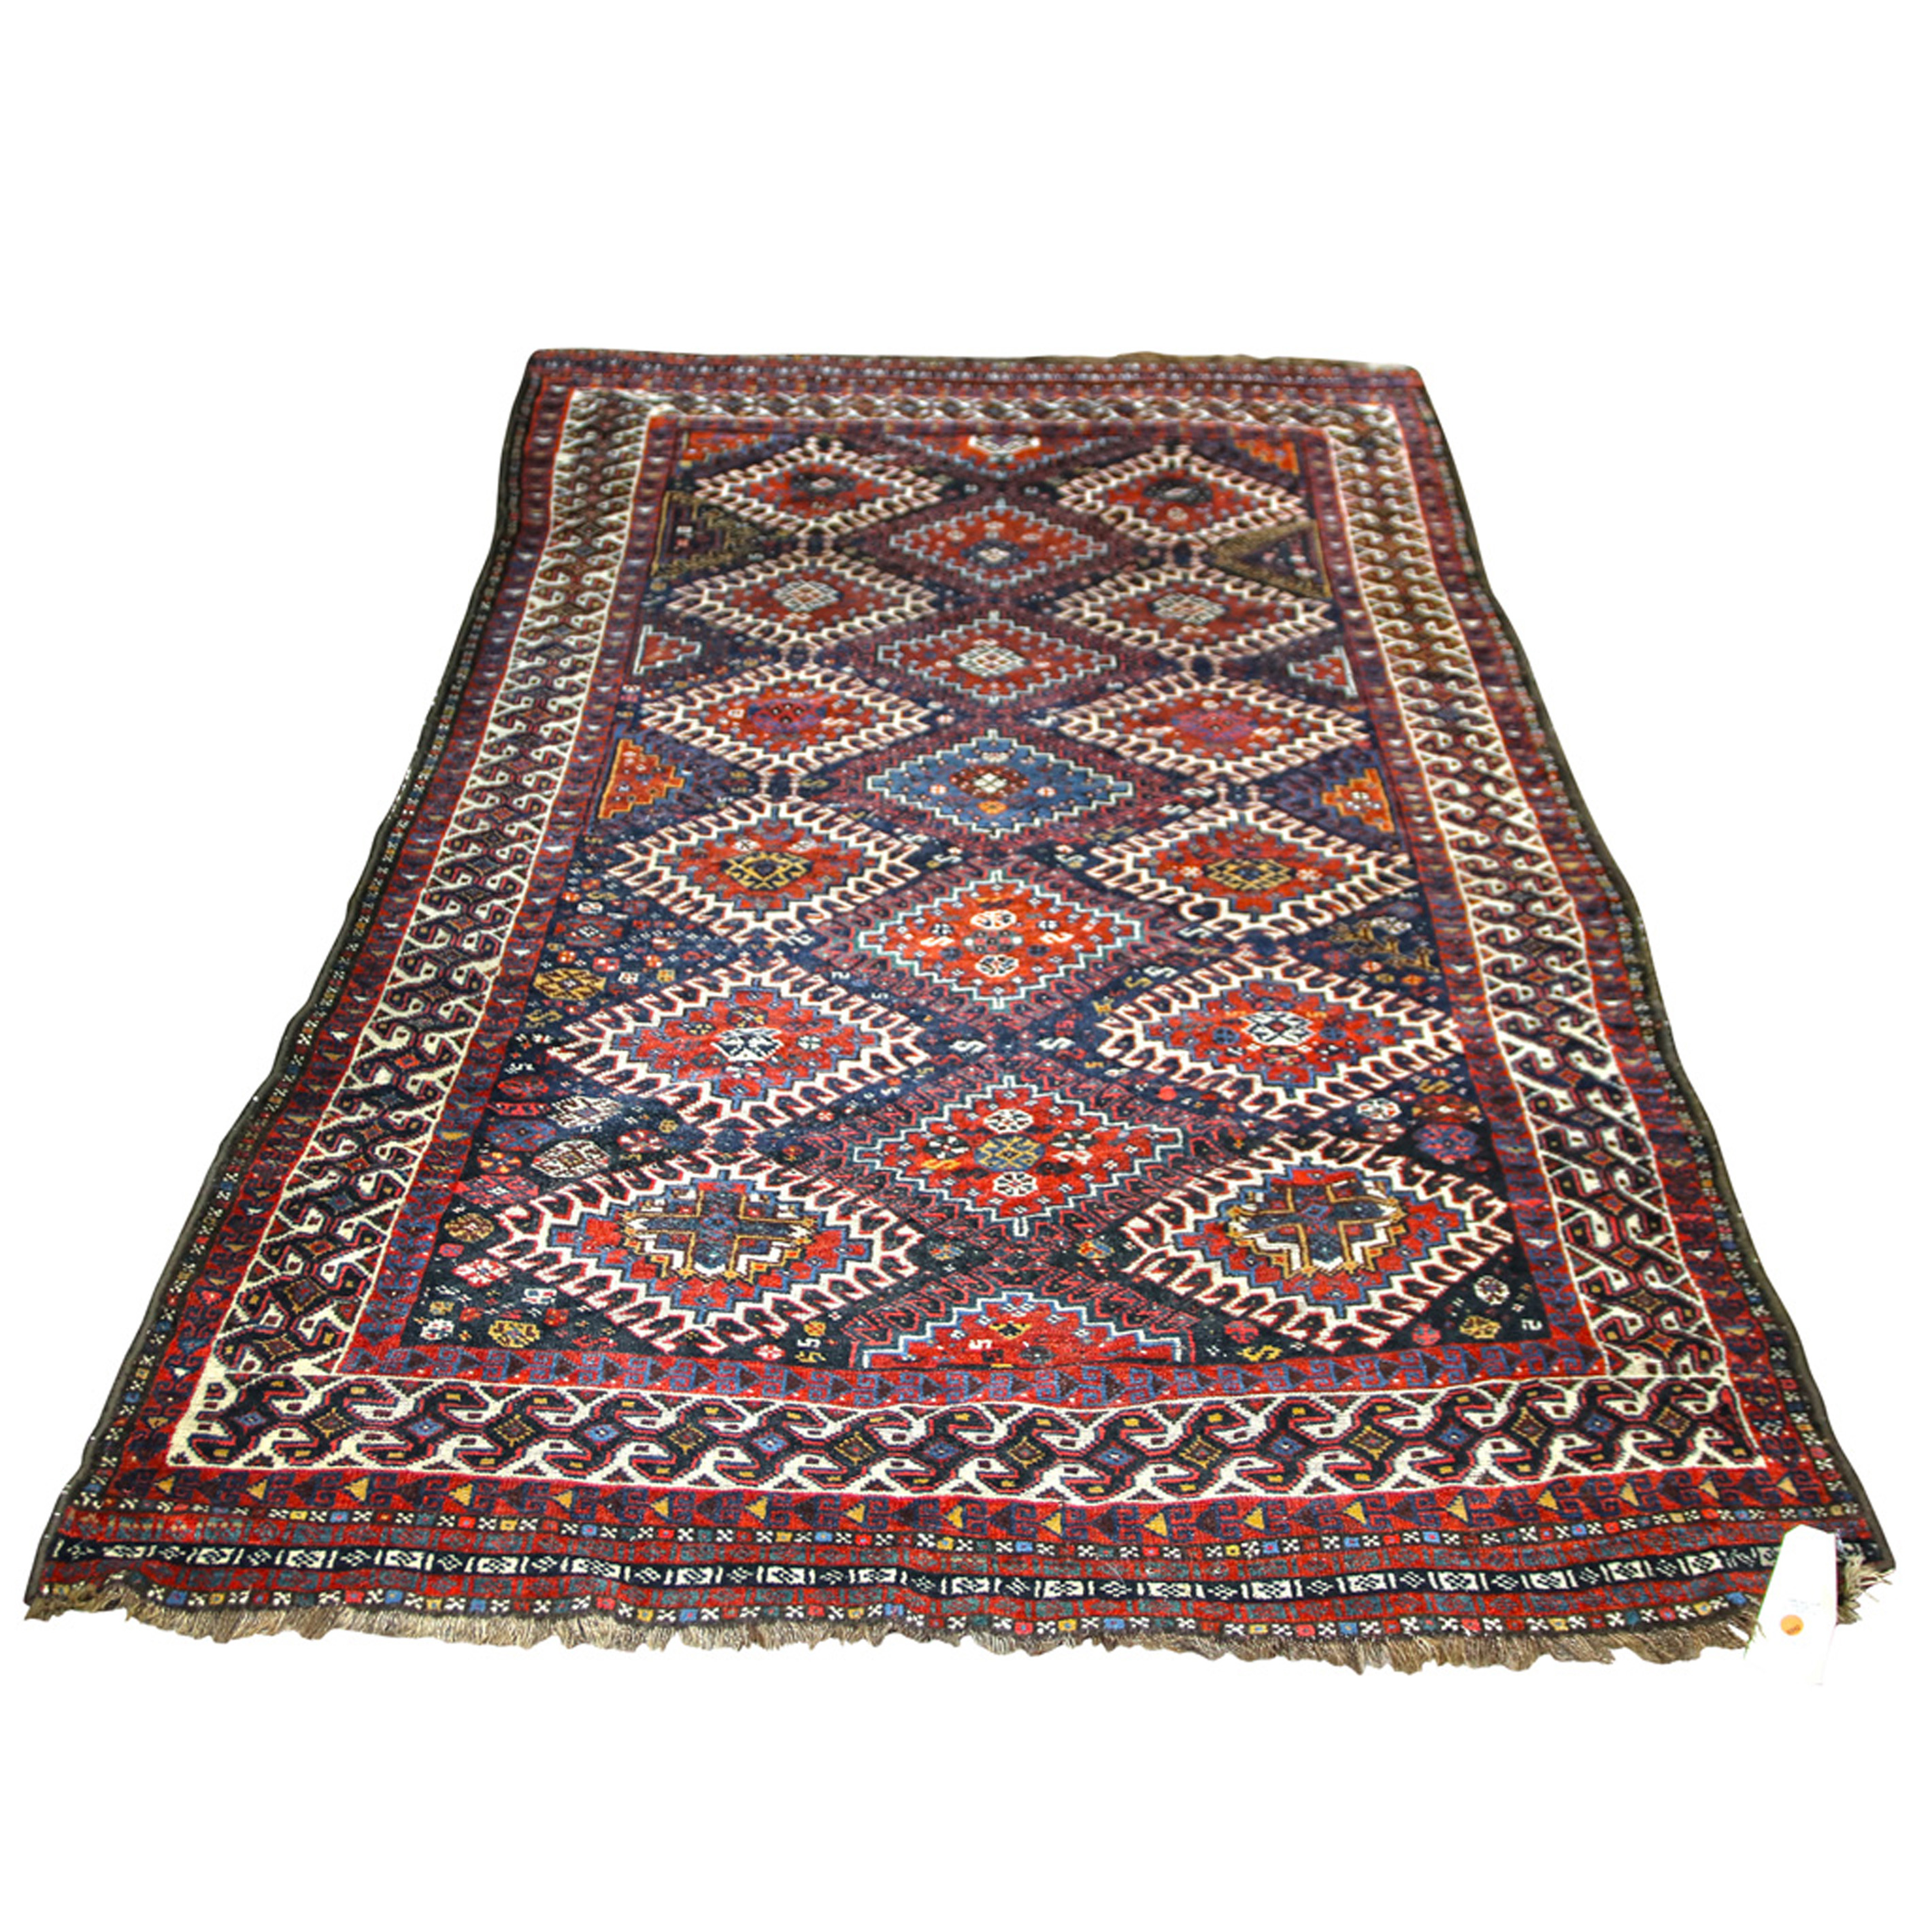 TURKOMAN CARPET Turkoman carpet  3a4a96